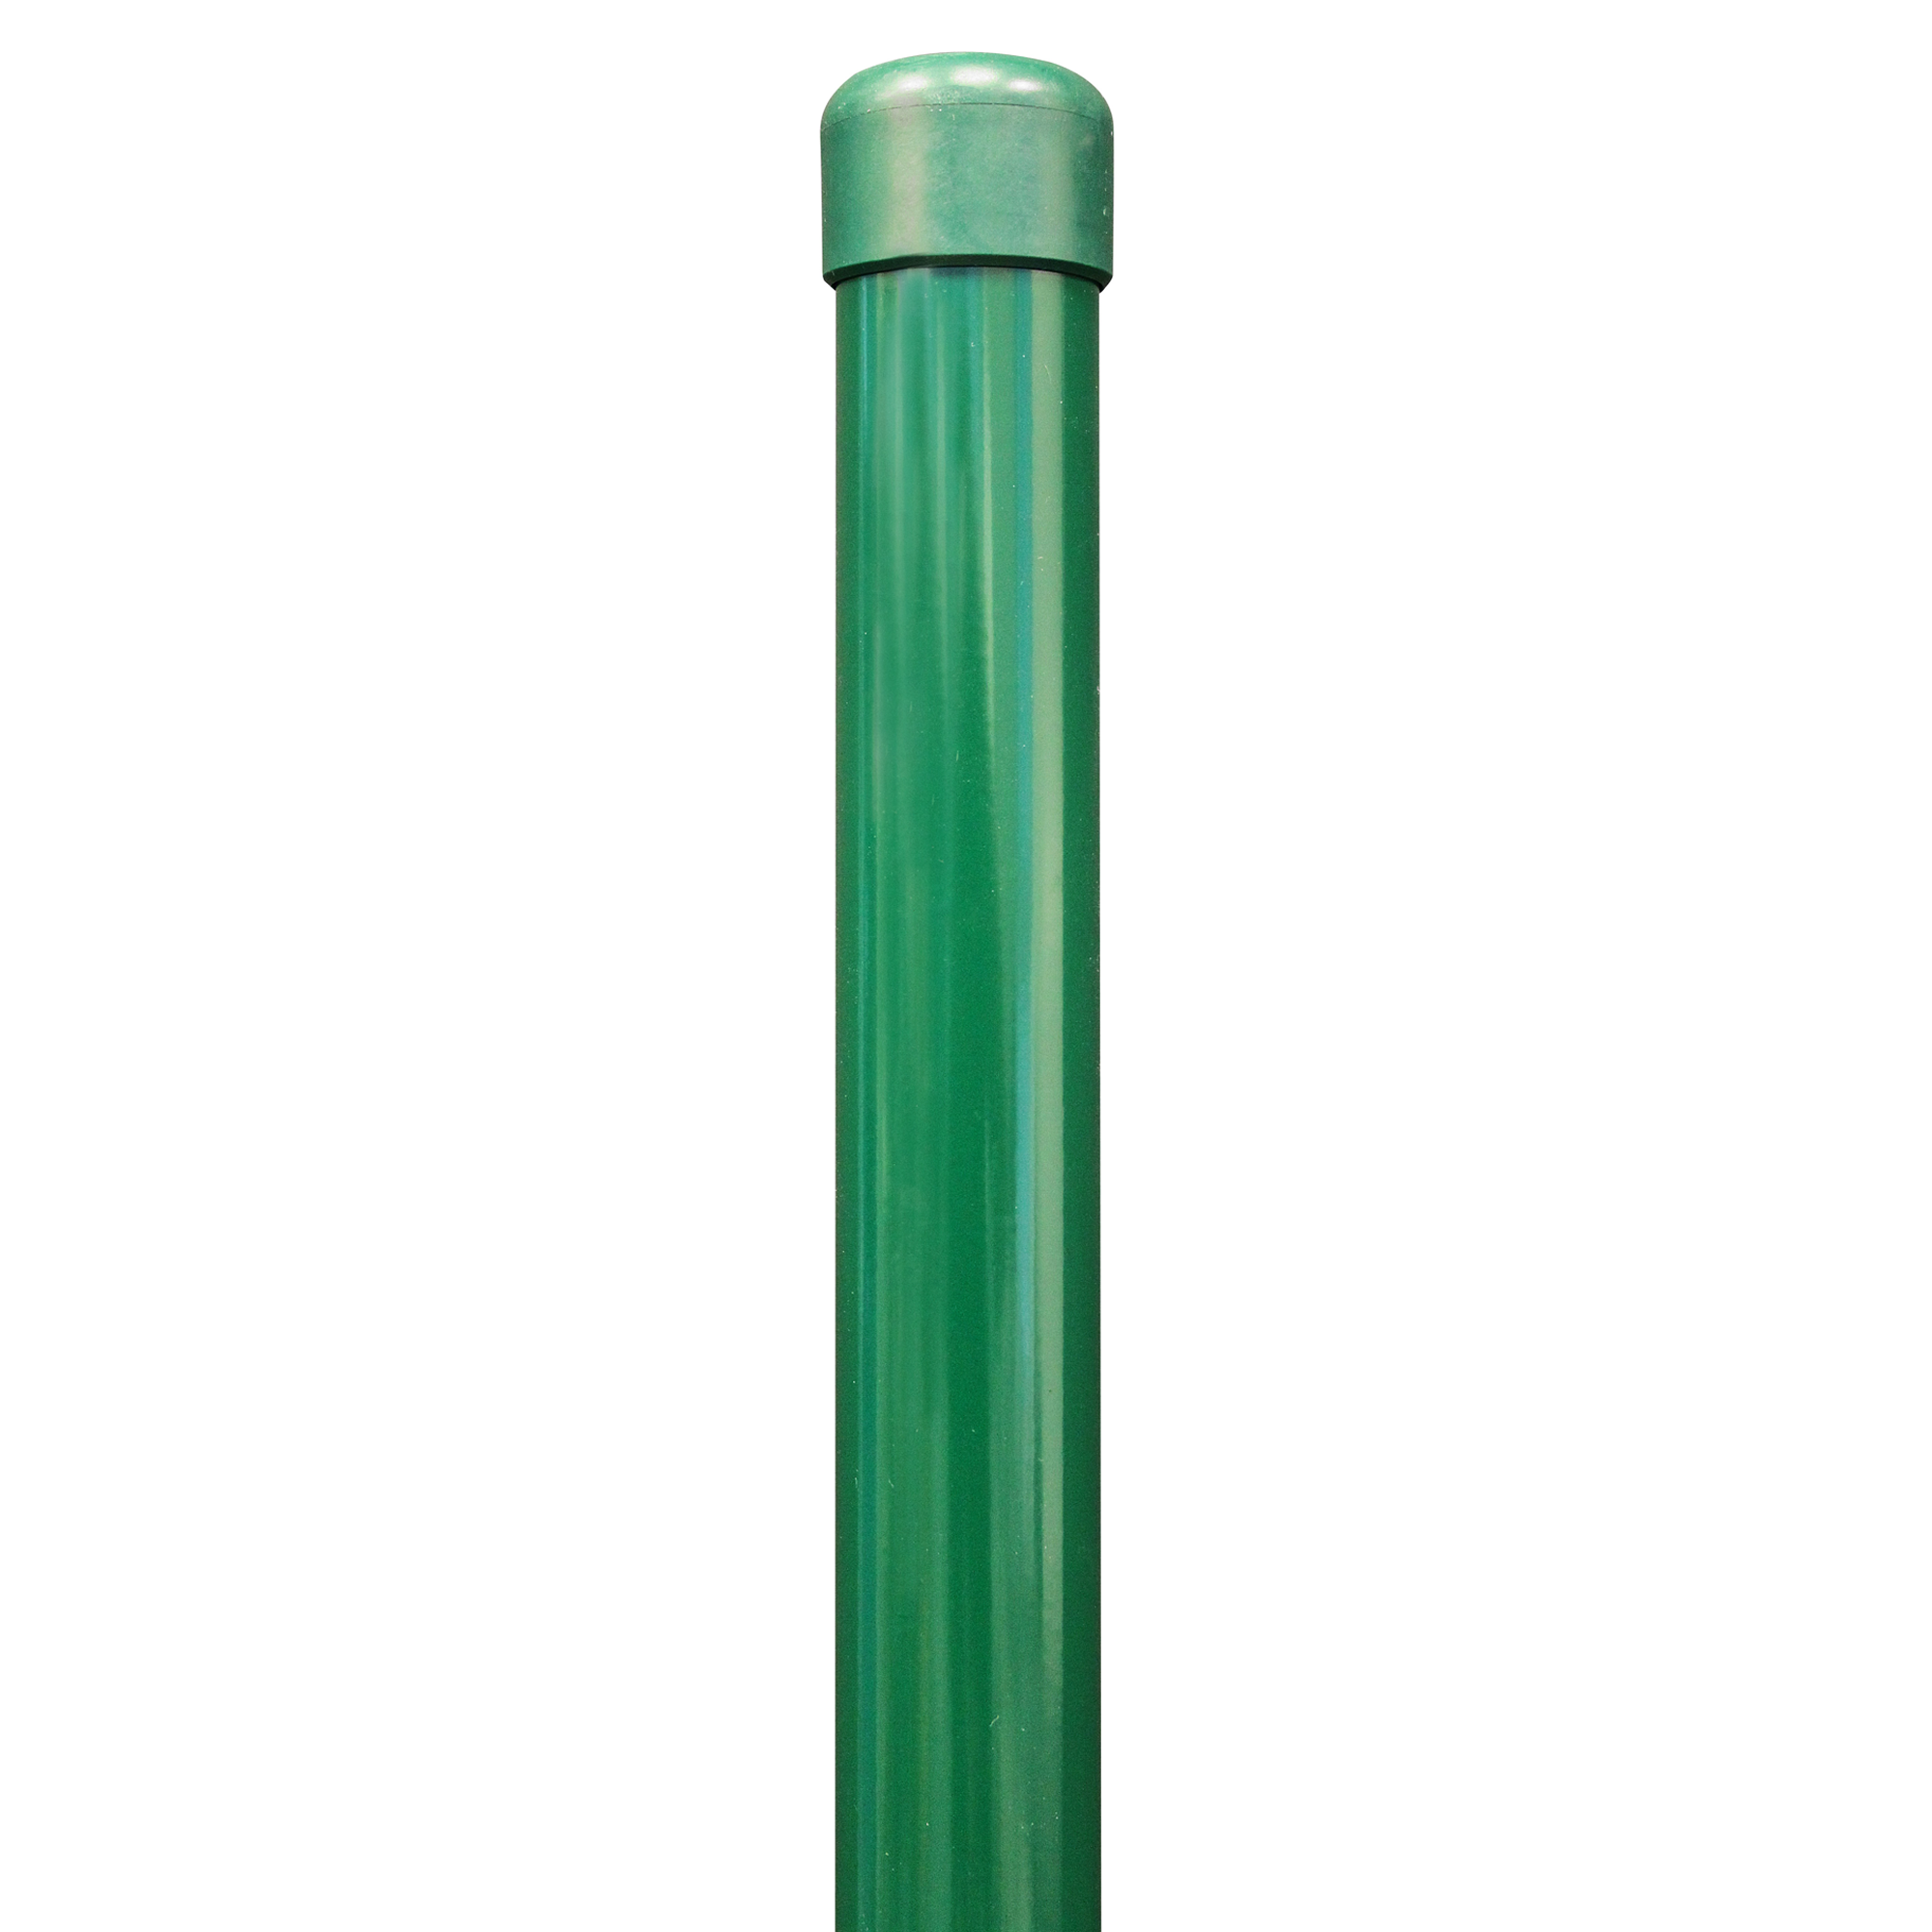 Zaunpfosten für Schweißgitterzäune grün Ø 3,4 x 150 cm + product picture